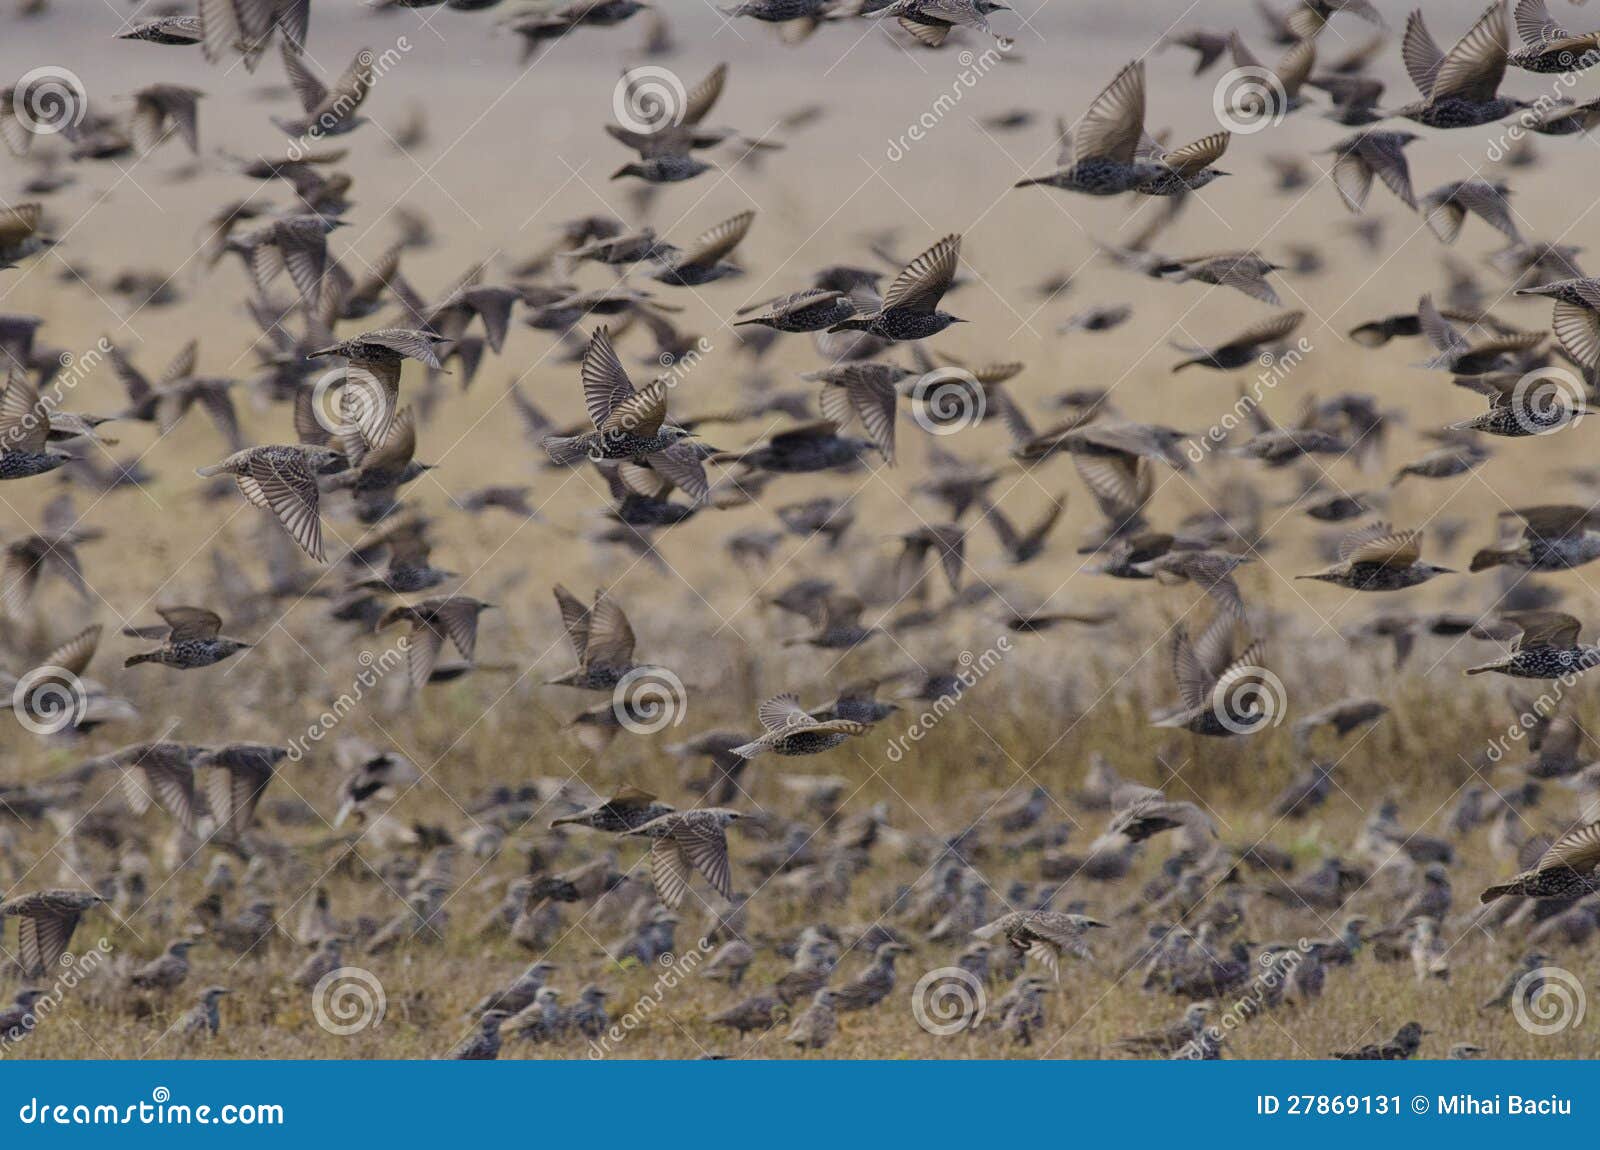 flock of european starlings